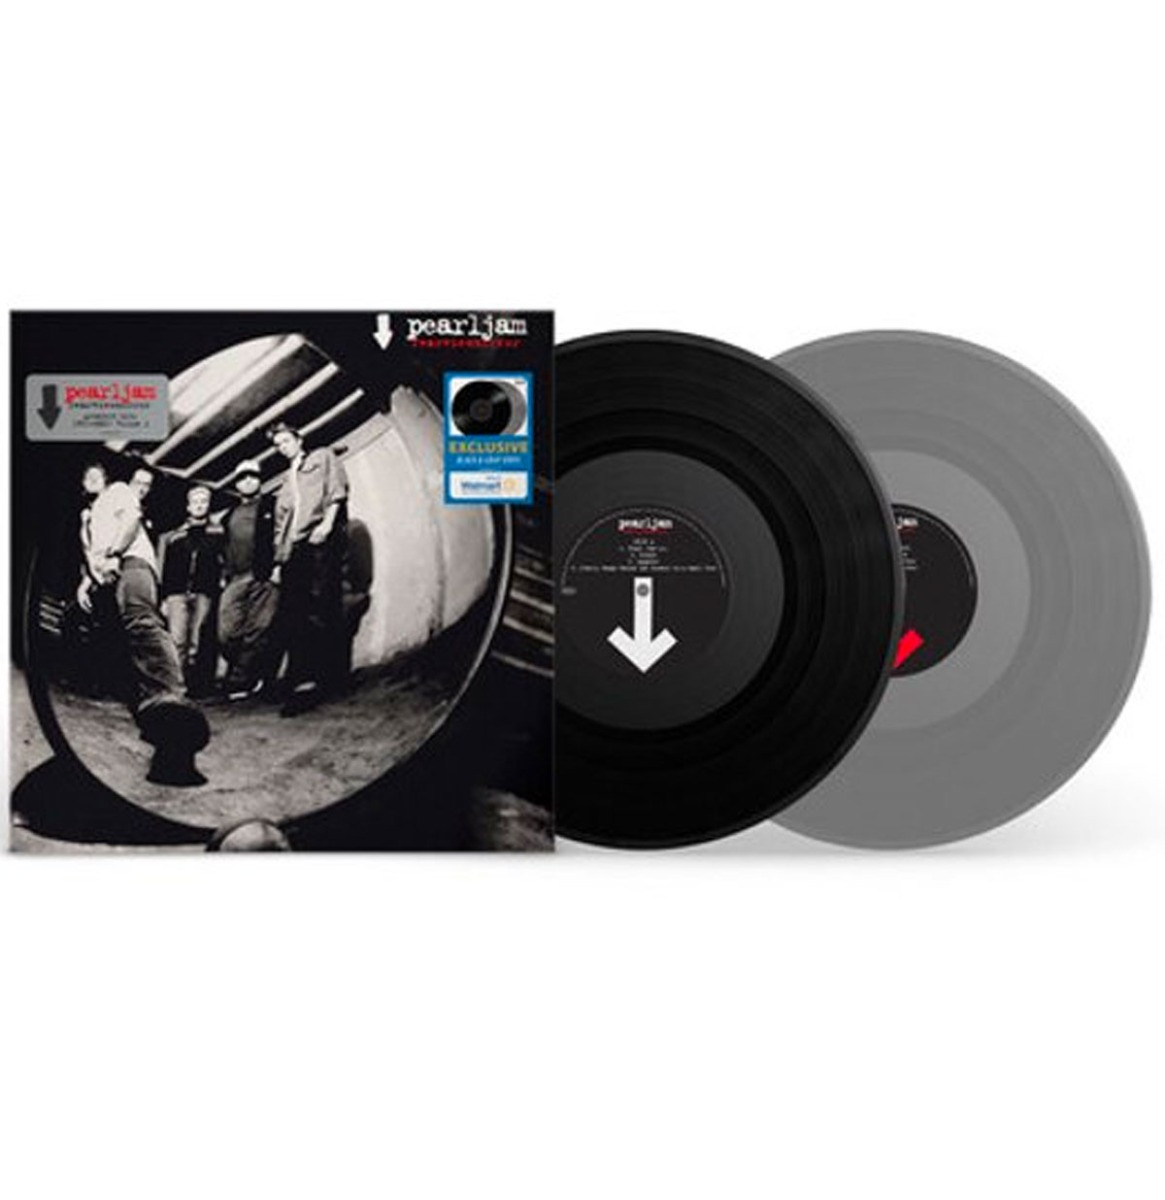 Pearl Jam - RearviewMirror 1991-2003 Vol. 2 (Gekleurd Vinyl) (Walmart Exclusive) 2LP